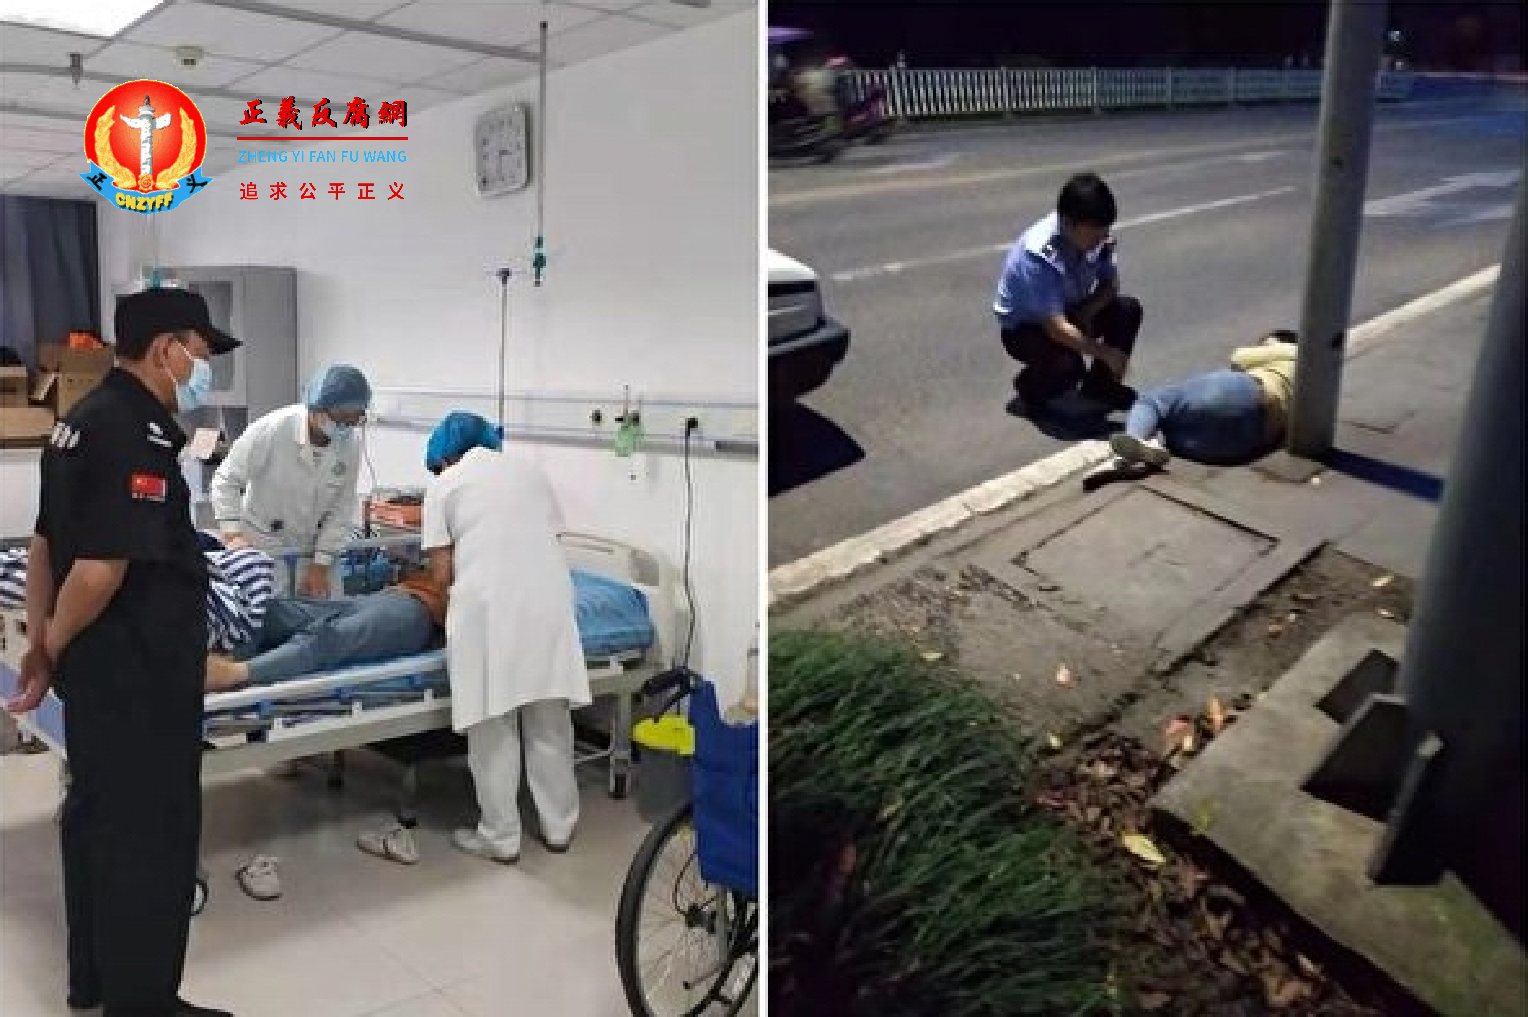 重庆长寿区访民傅淑清、邹茂淑在北京被截访，遣返途中两人被殴打受伤，后被弃置长寿区郊外，但至今政府官员不闻不问。.png